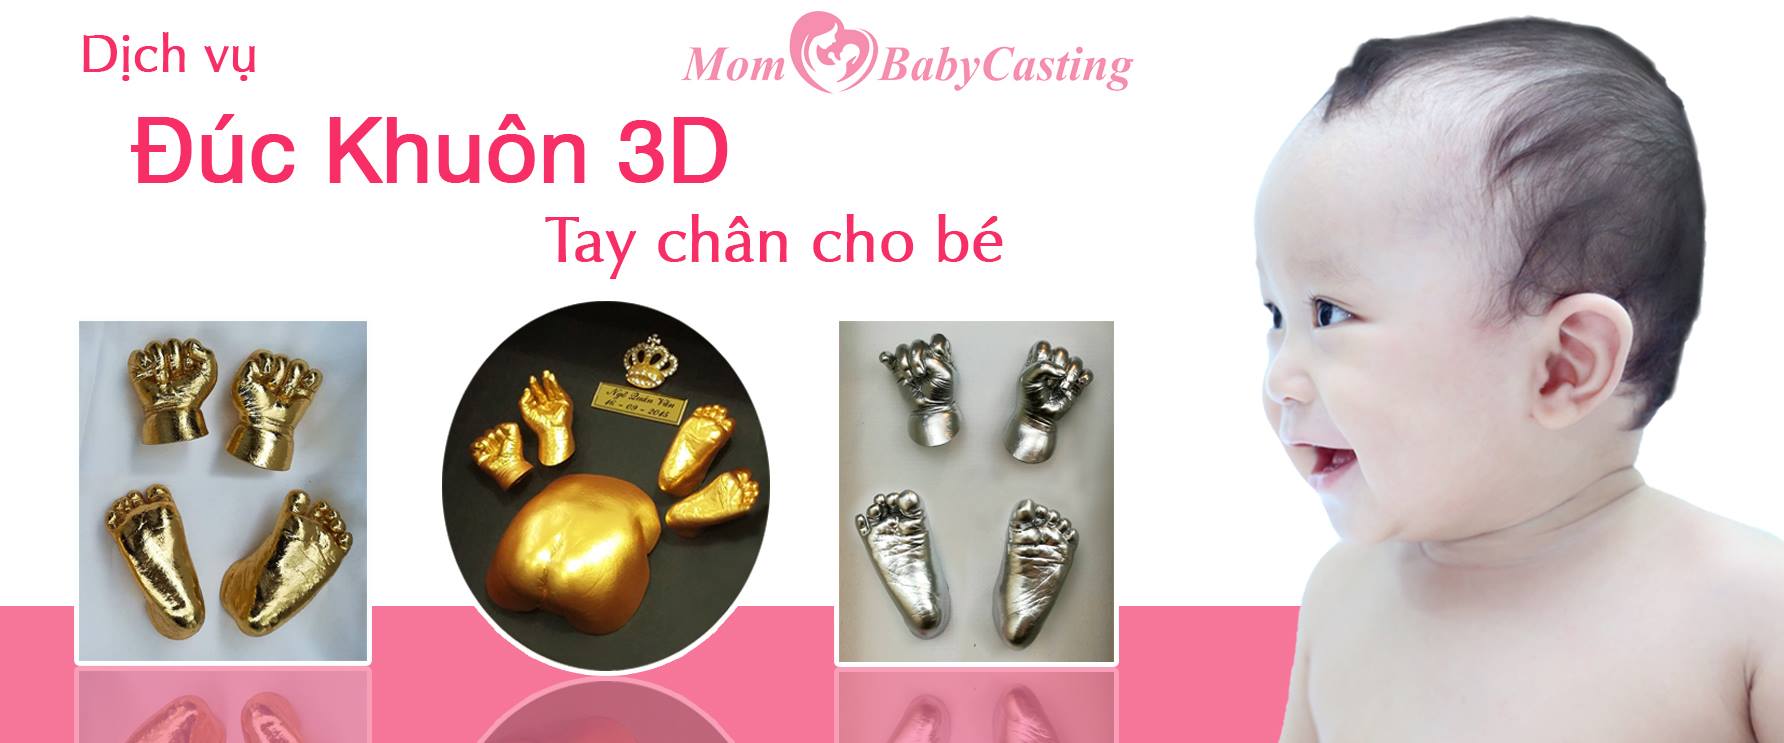 Đúc khuôn tay chân 3D Mom Baby Casting